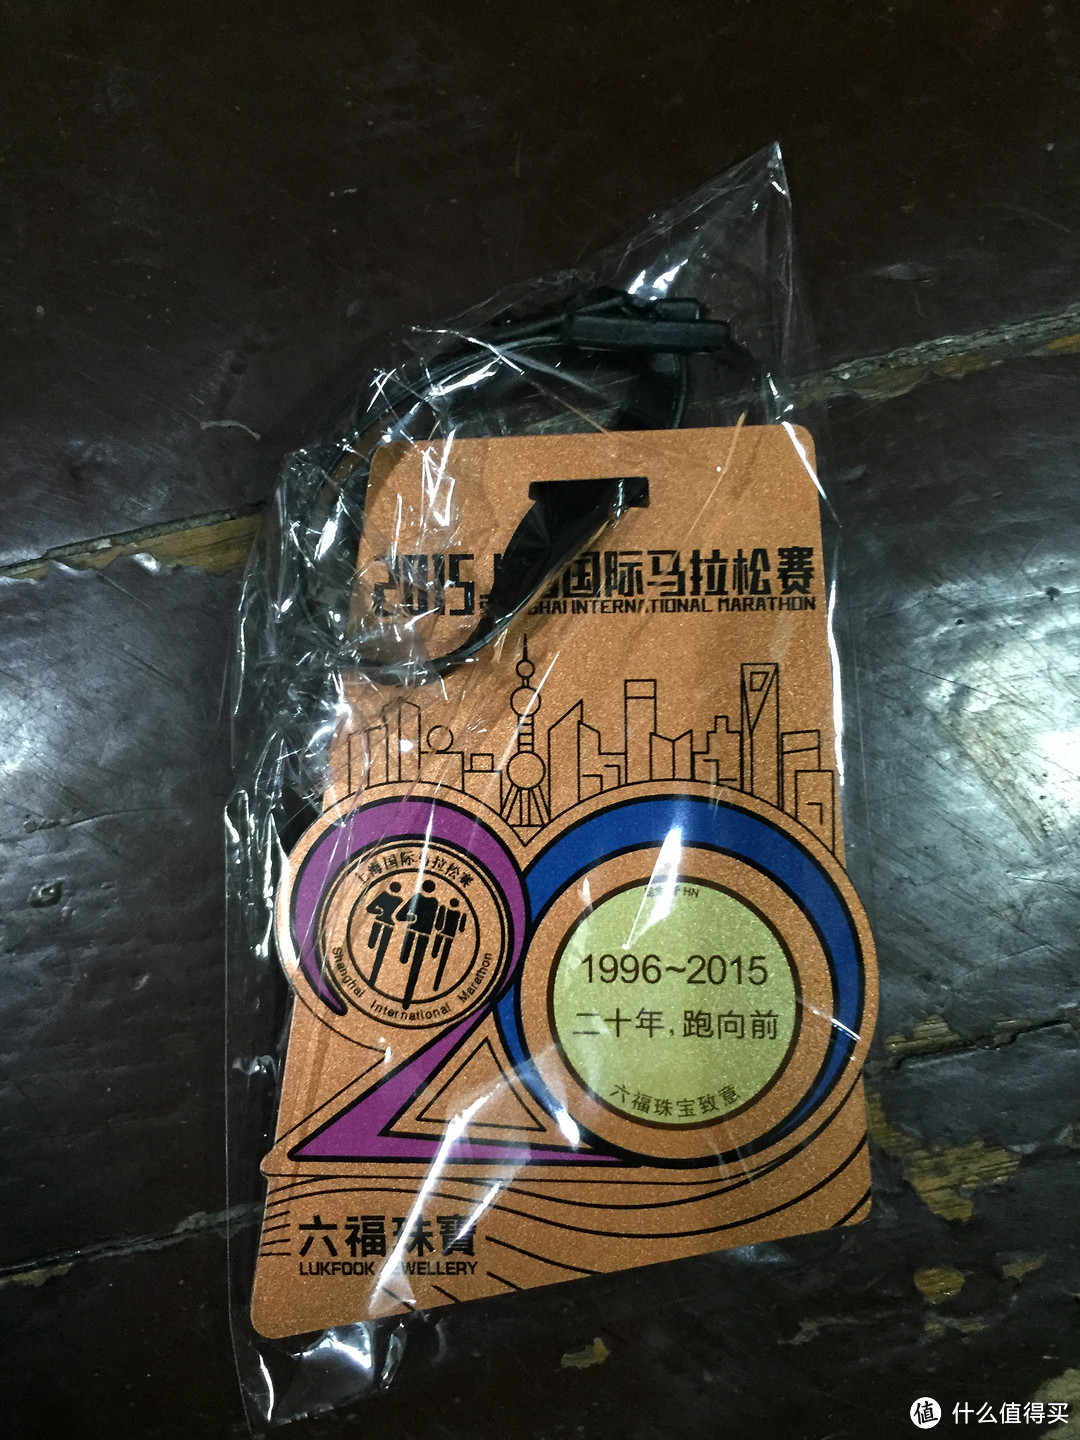 上海拦不住----体博会撸的羊毛晒物